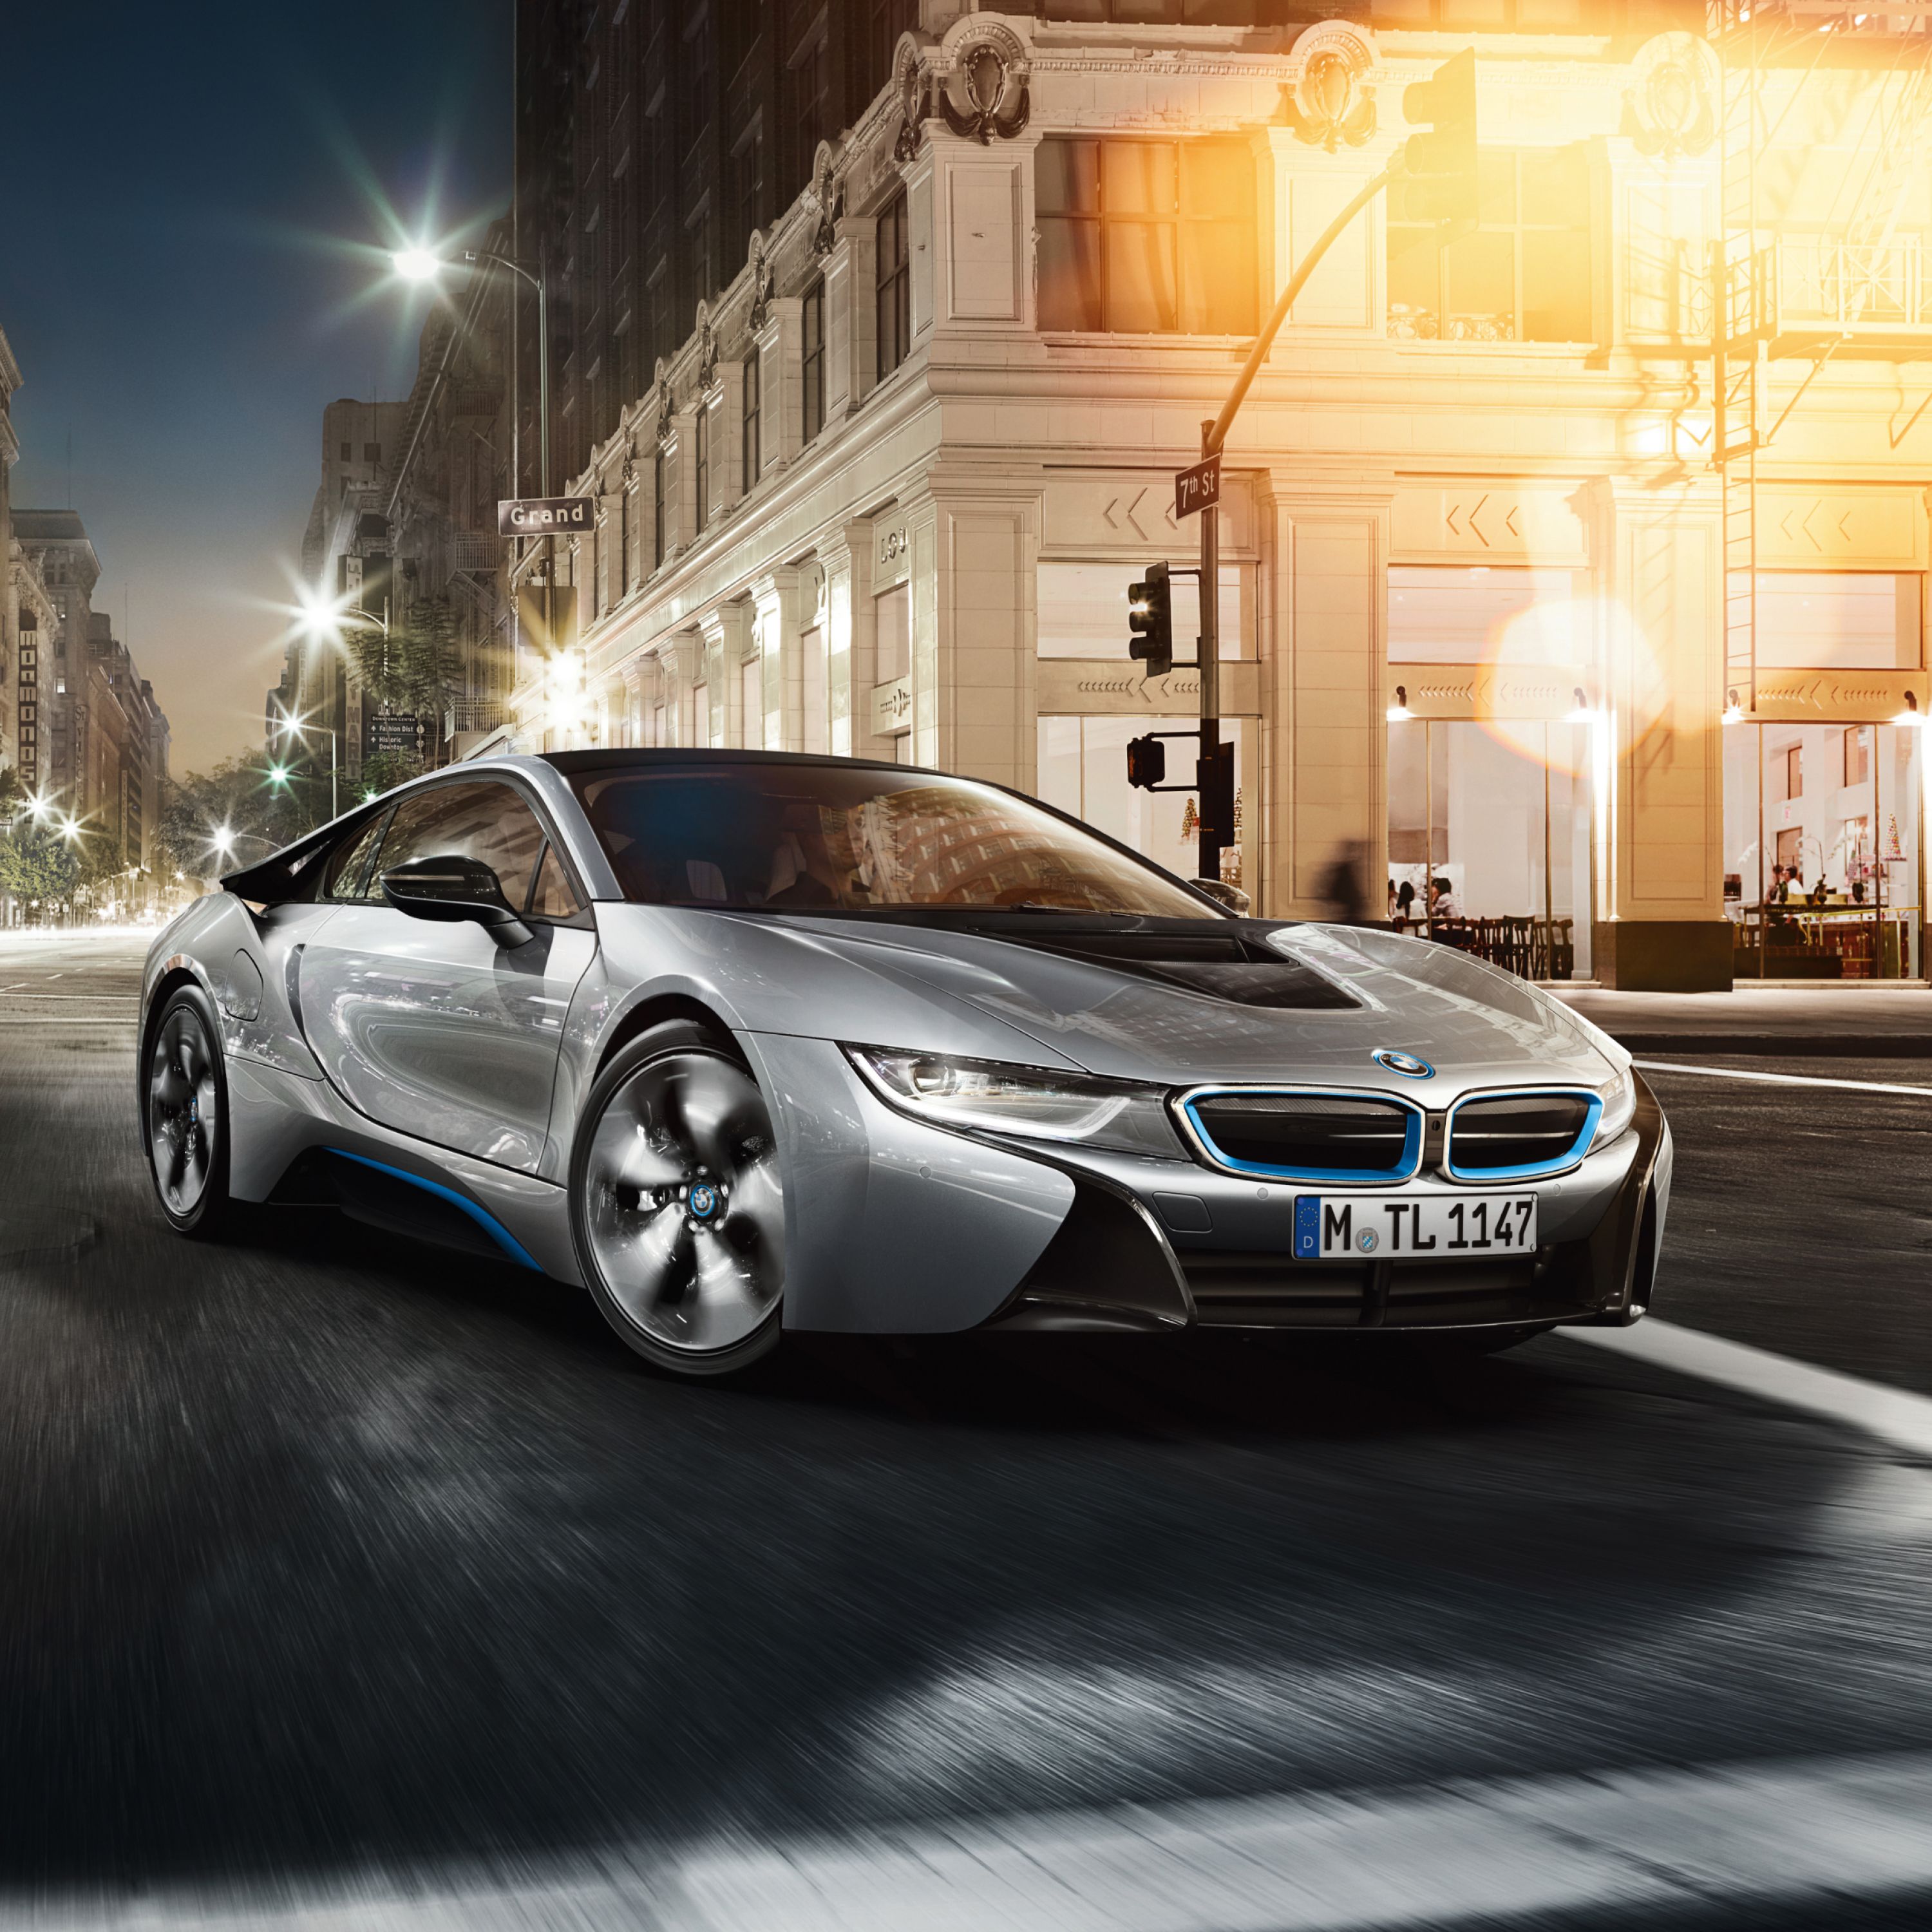 Zilveren BMW i8 plug-in-hybridesportwagen parkerend voor een Grand Hotel in een grootstad